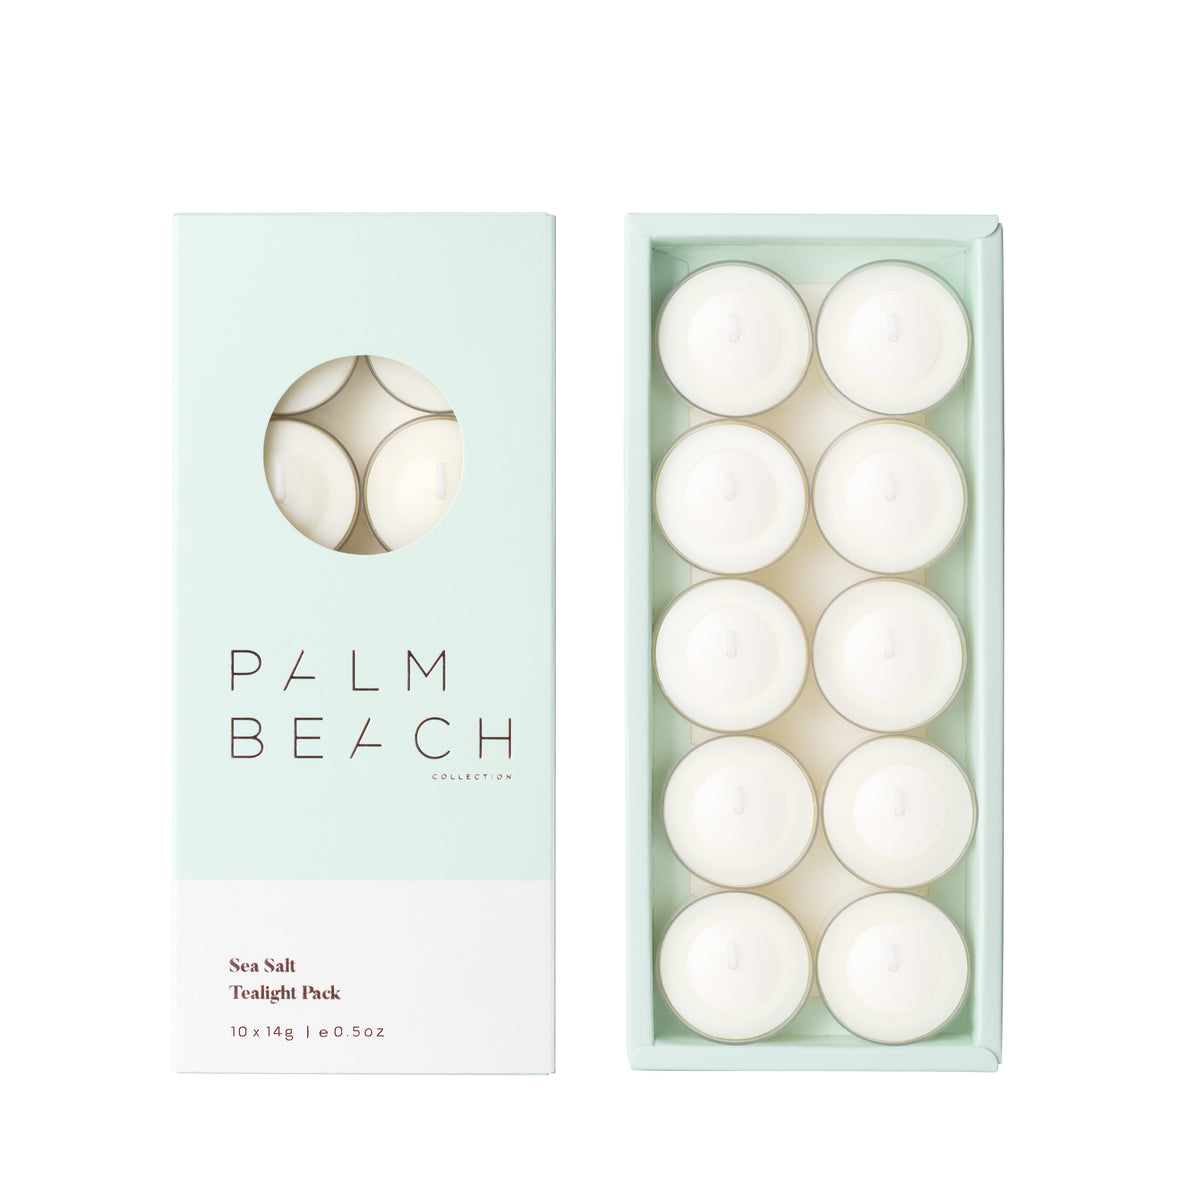 Palm Beach Collection Sea Salt | Tealight Pack 10 x 14g